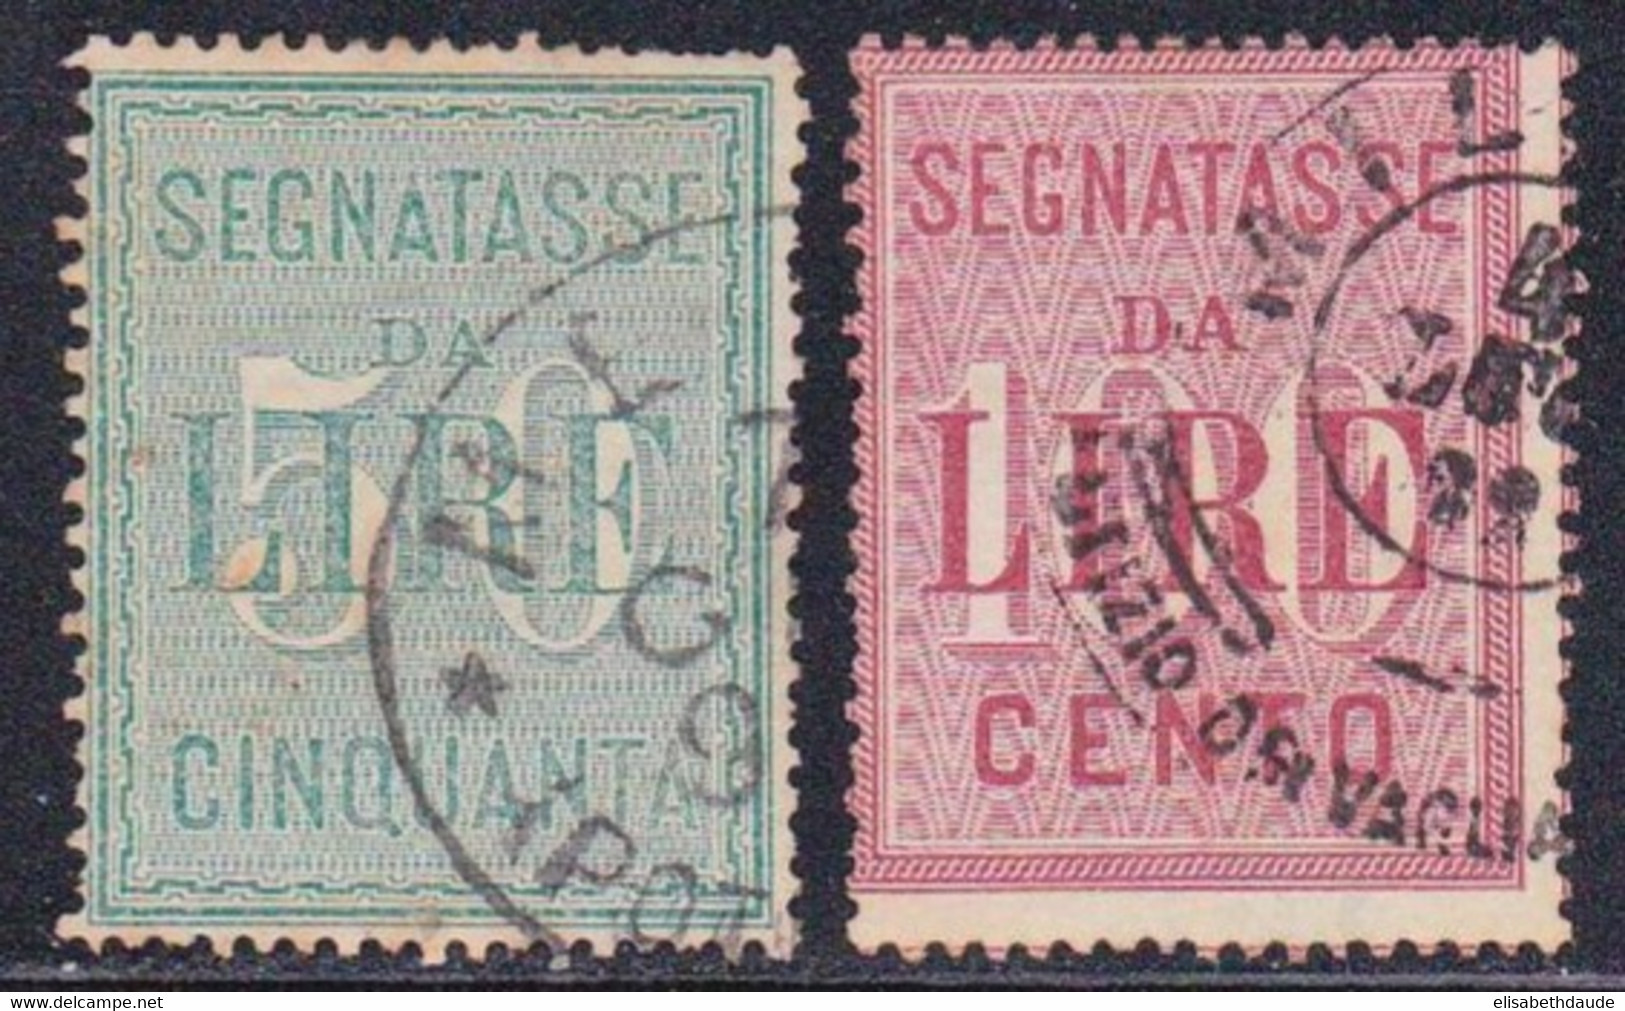 ITALIE - 1884 - YVERT N°20/21 OBLITERES - TAXE - COTE = 60 EUROS - Gebraucht